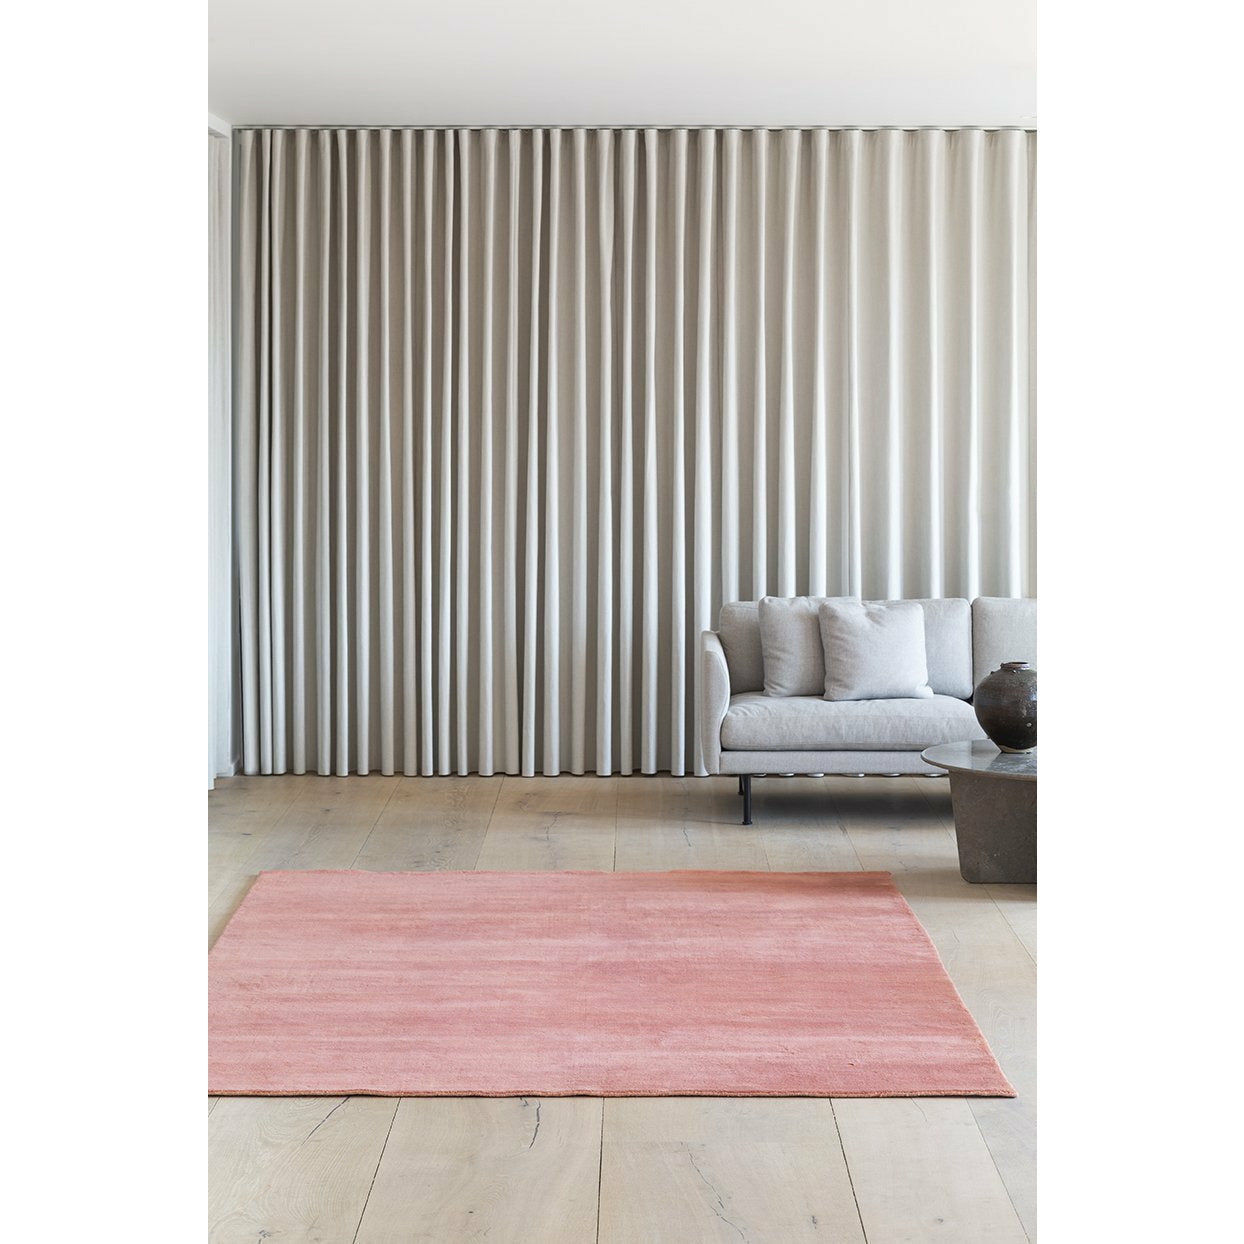 Massimo Earth Bambus Teppich Terrakotta, 200x300 cm